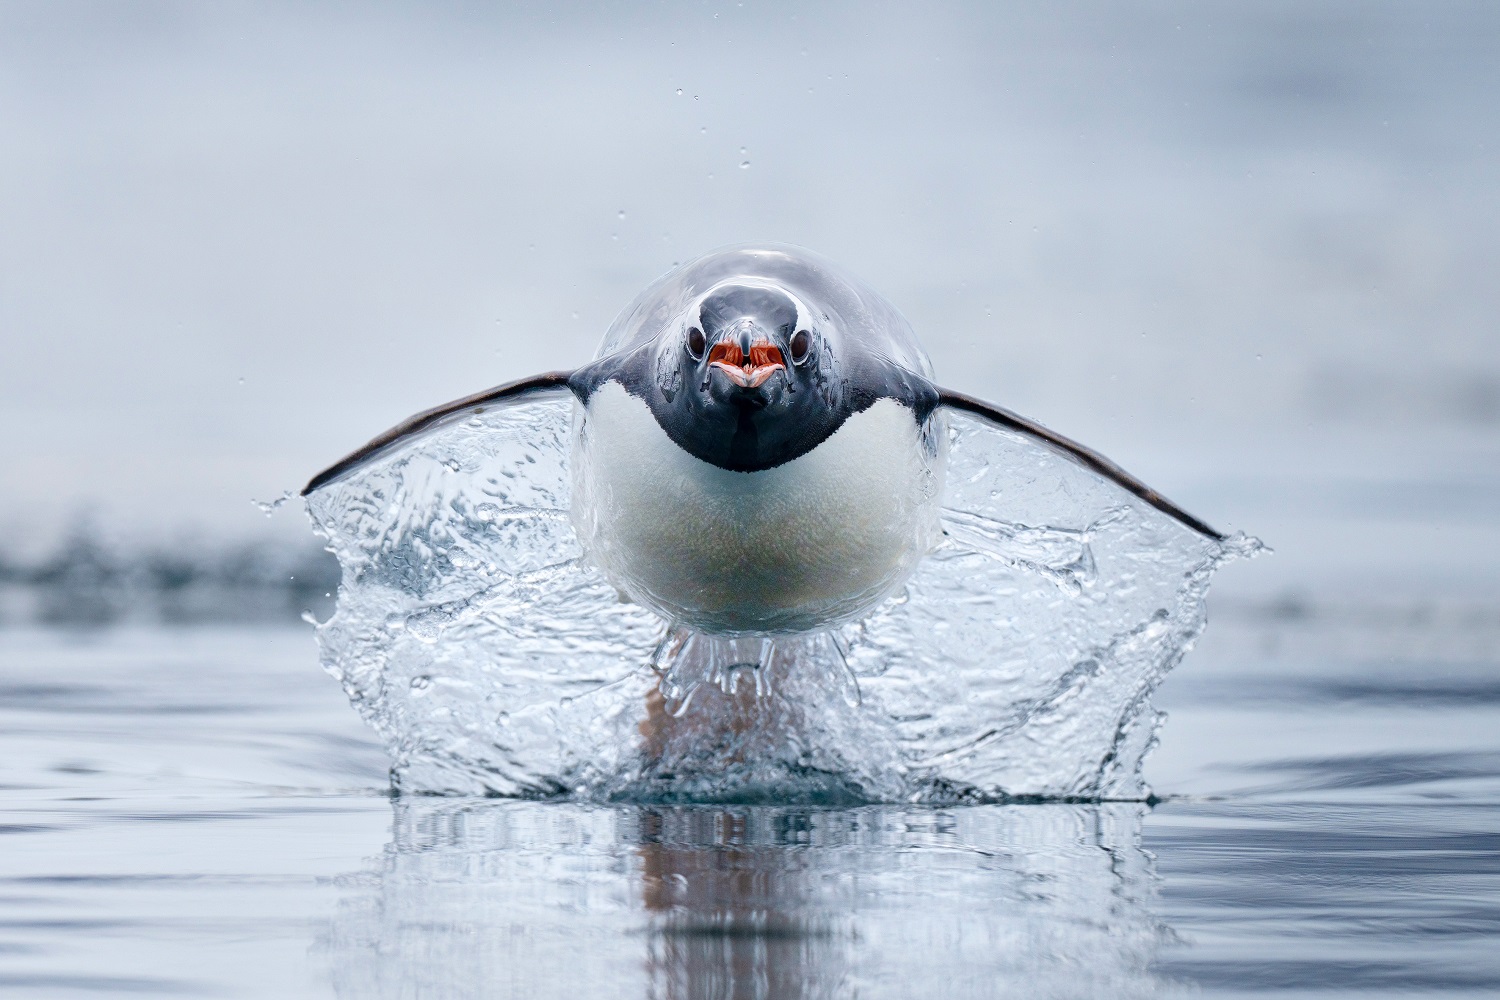 Gentoo penguin shooting above water